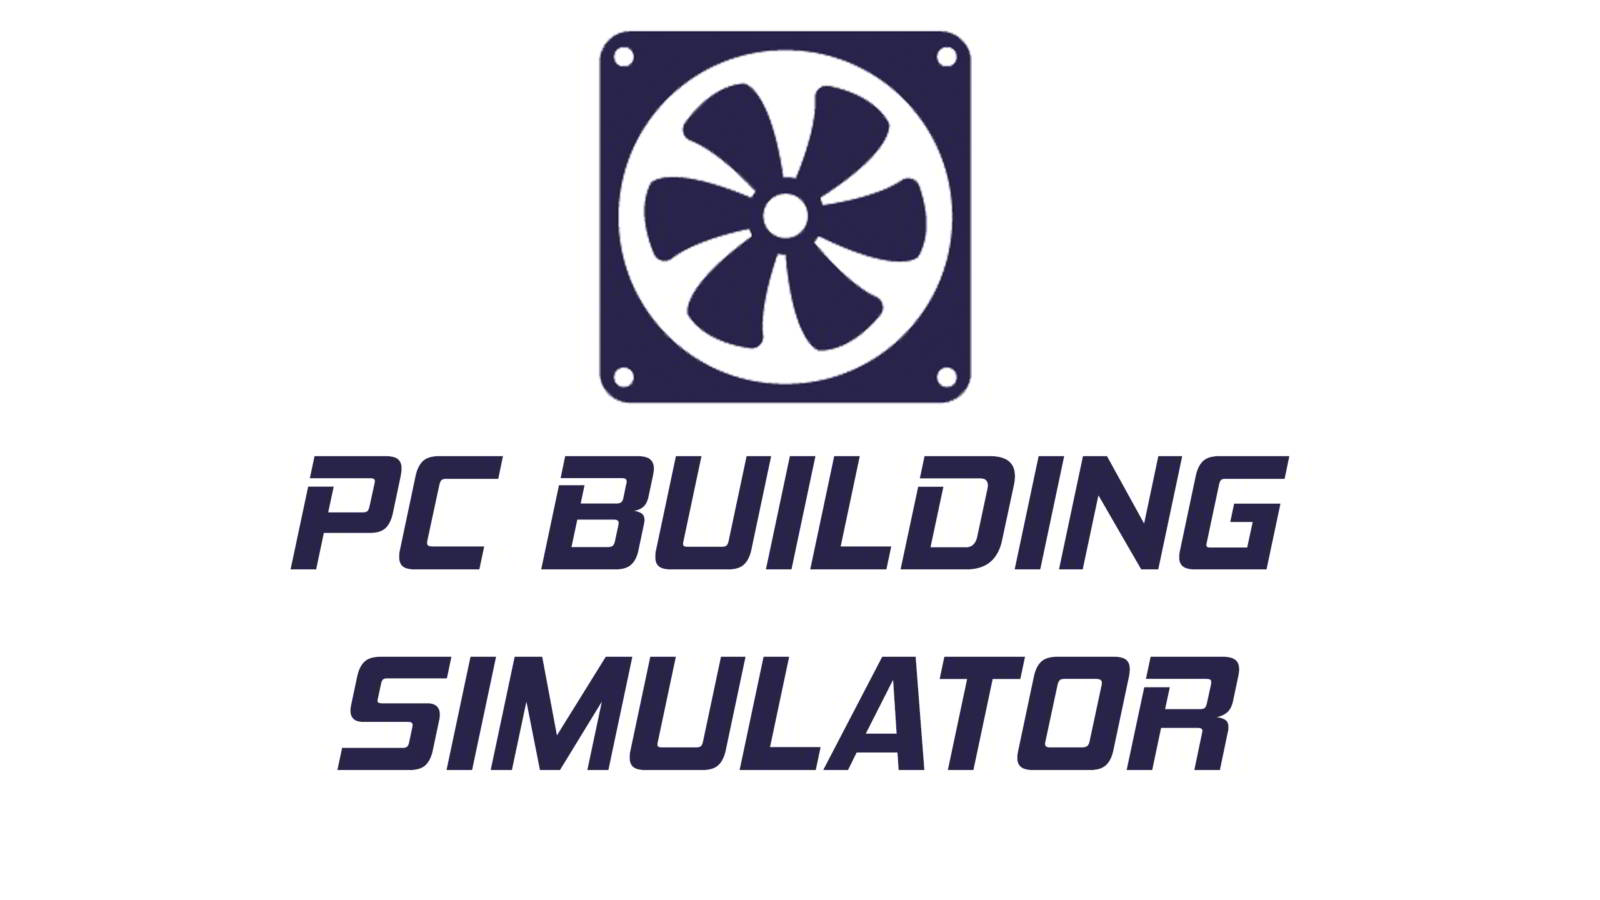 PC Building Simulator game